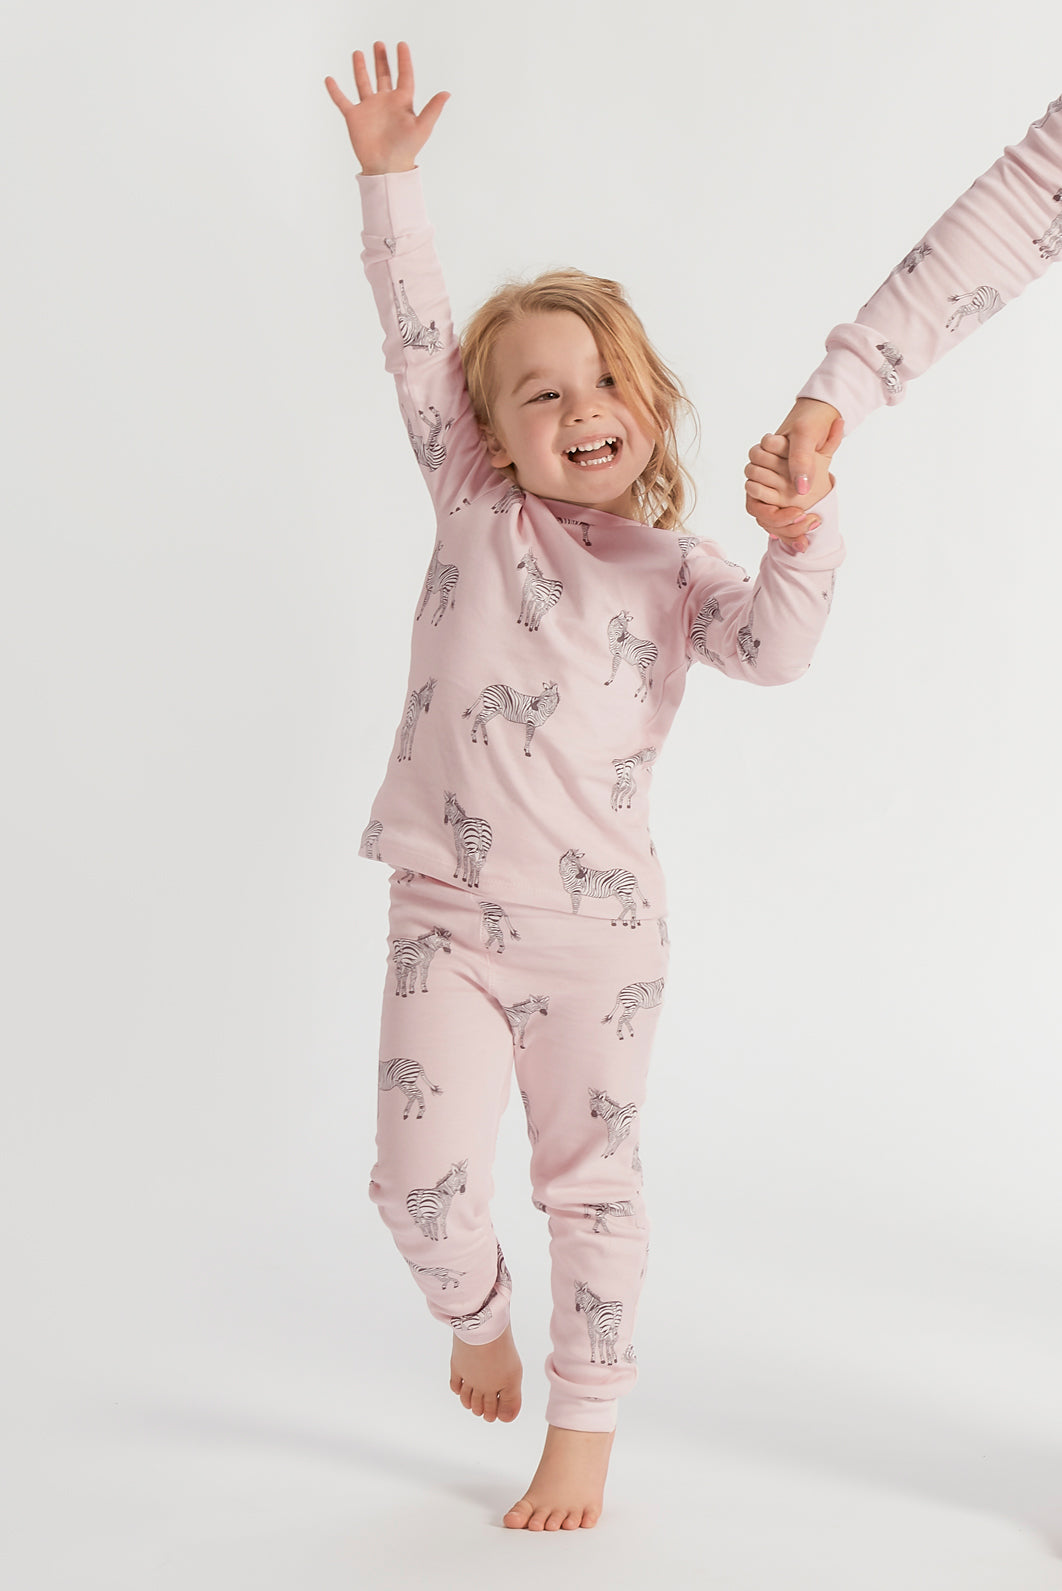 Mummy & & Pyjamas Matching Tiffy Tallulah Daughter 